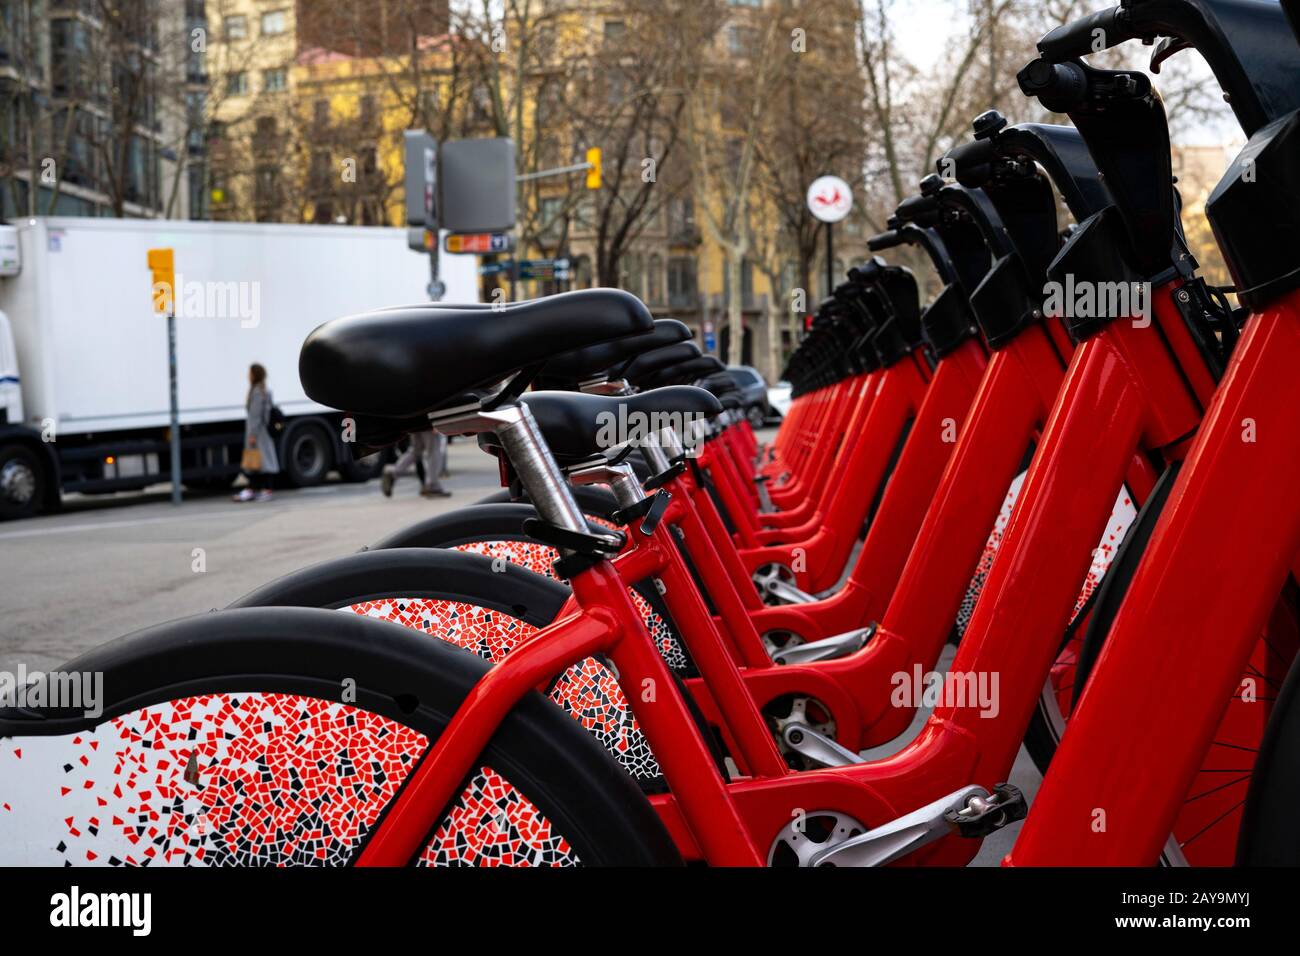 Rote Fahrräder in einer Fahrradstation. Konzept für Fahrräder und nachhaltigen Transport. Stockfoto